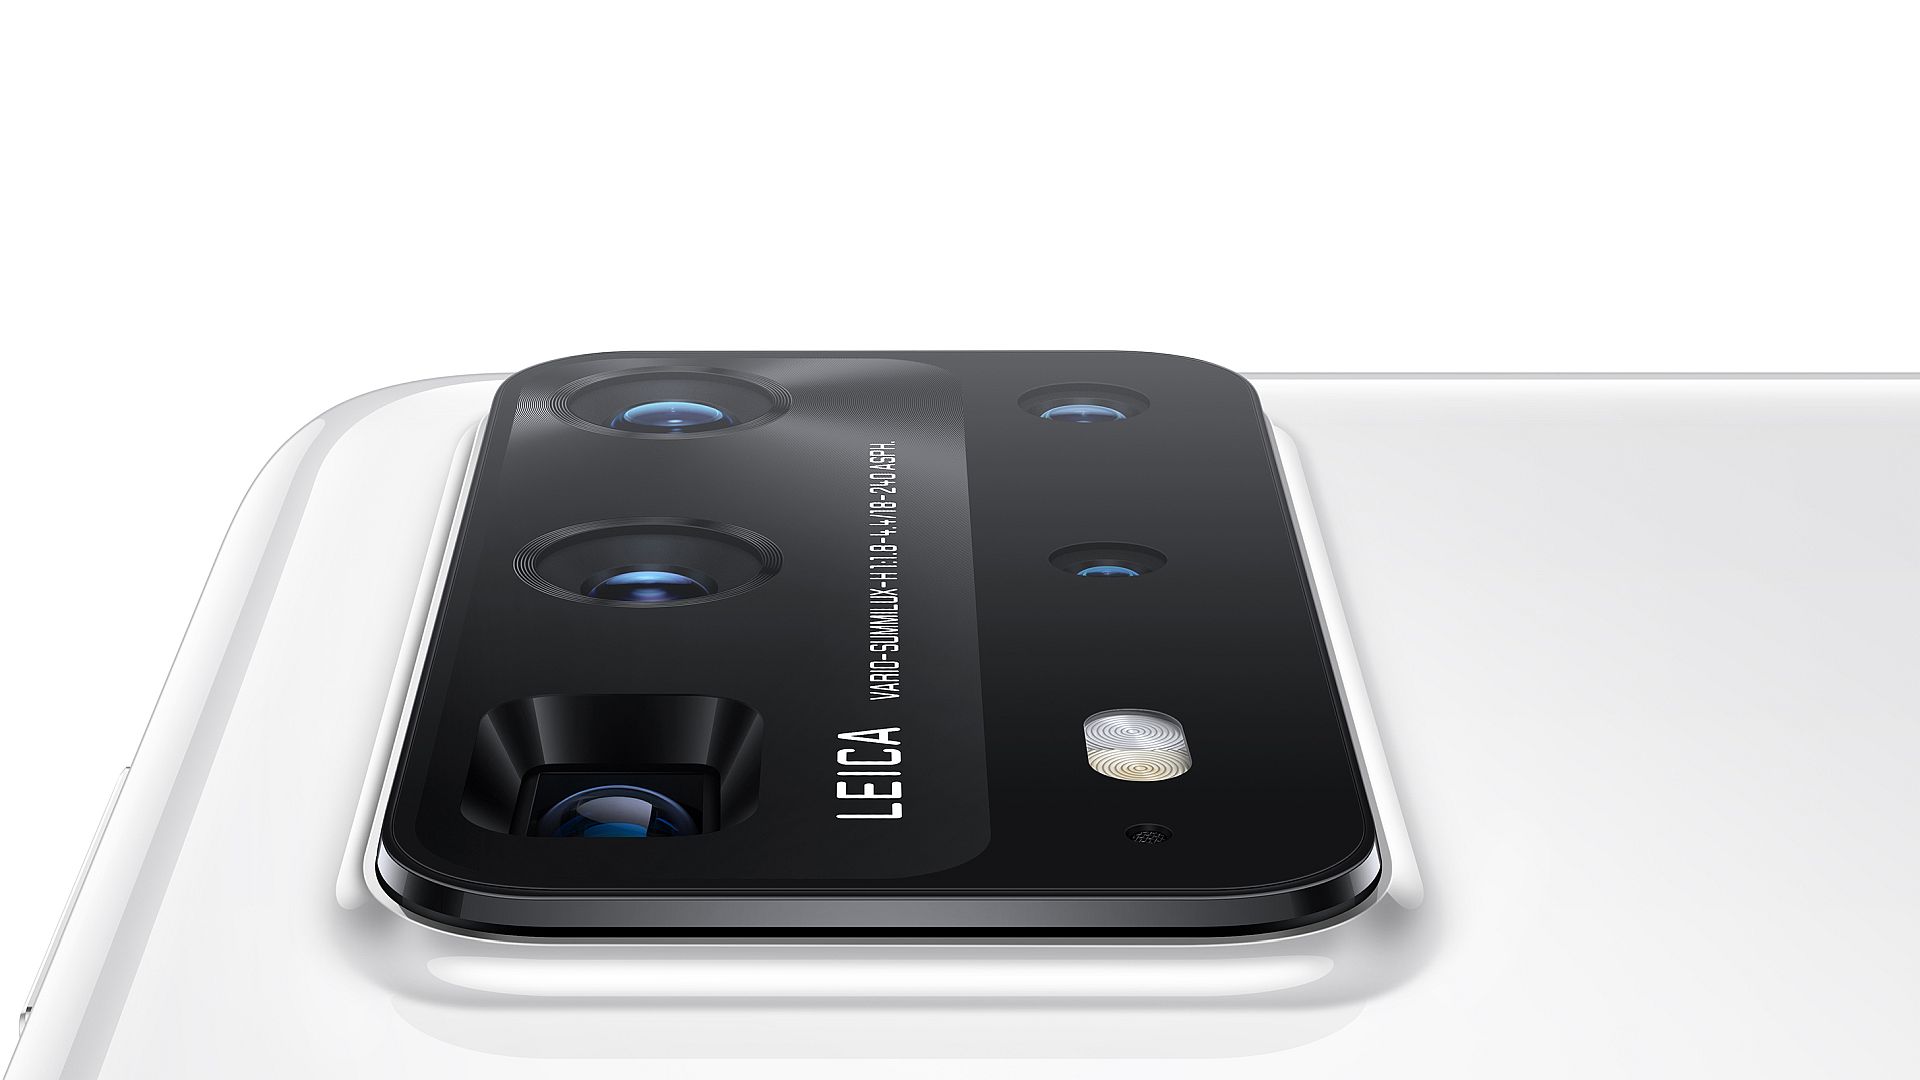 Enhed Limited Serena TEST: Huawei P40 Pro+ (kamera) – Huawei først med 10x zoom i mobilen